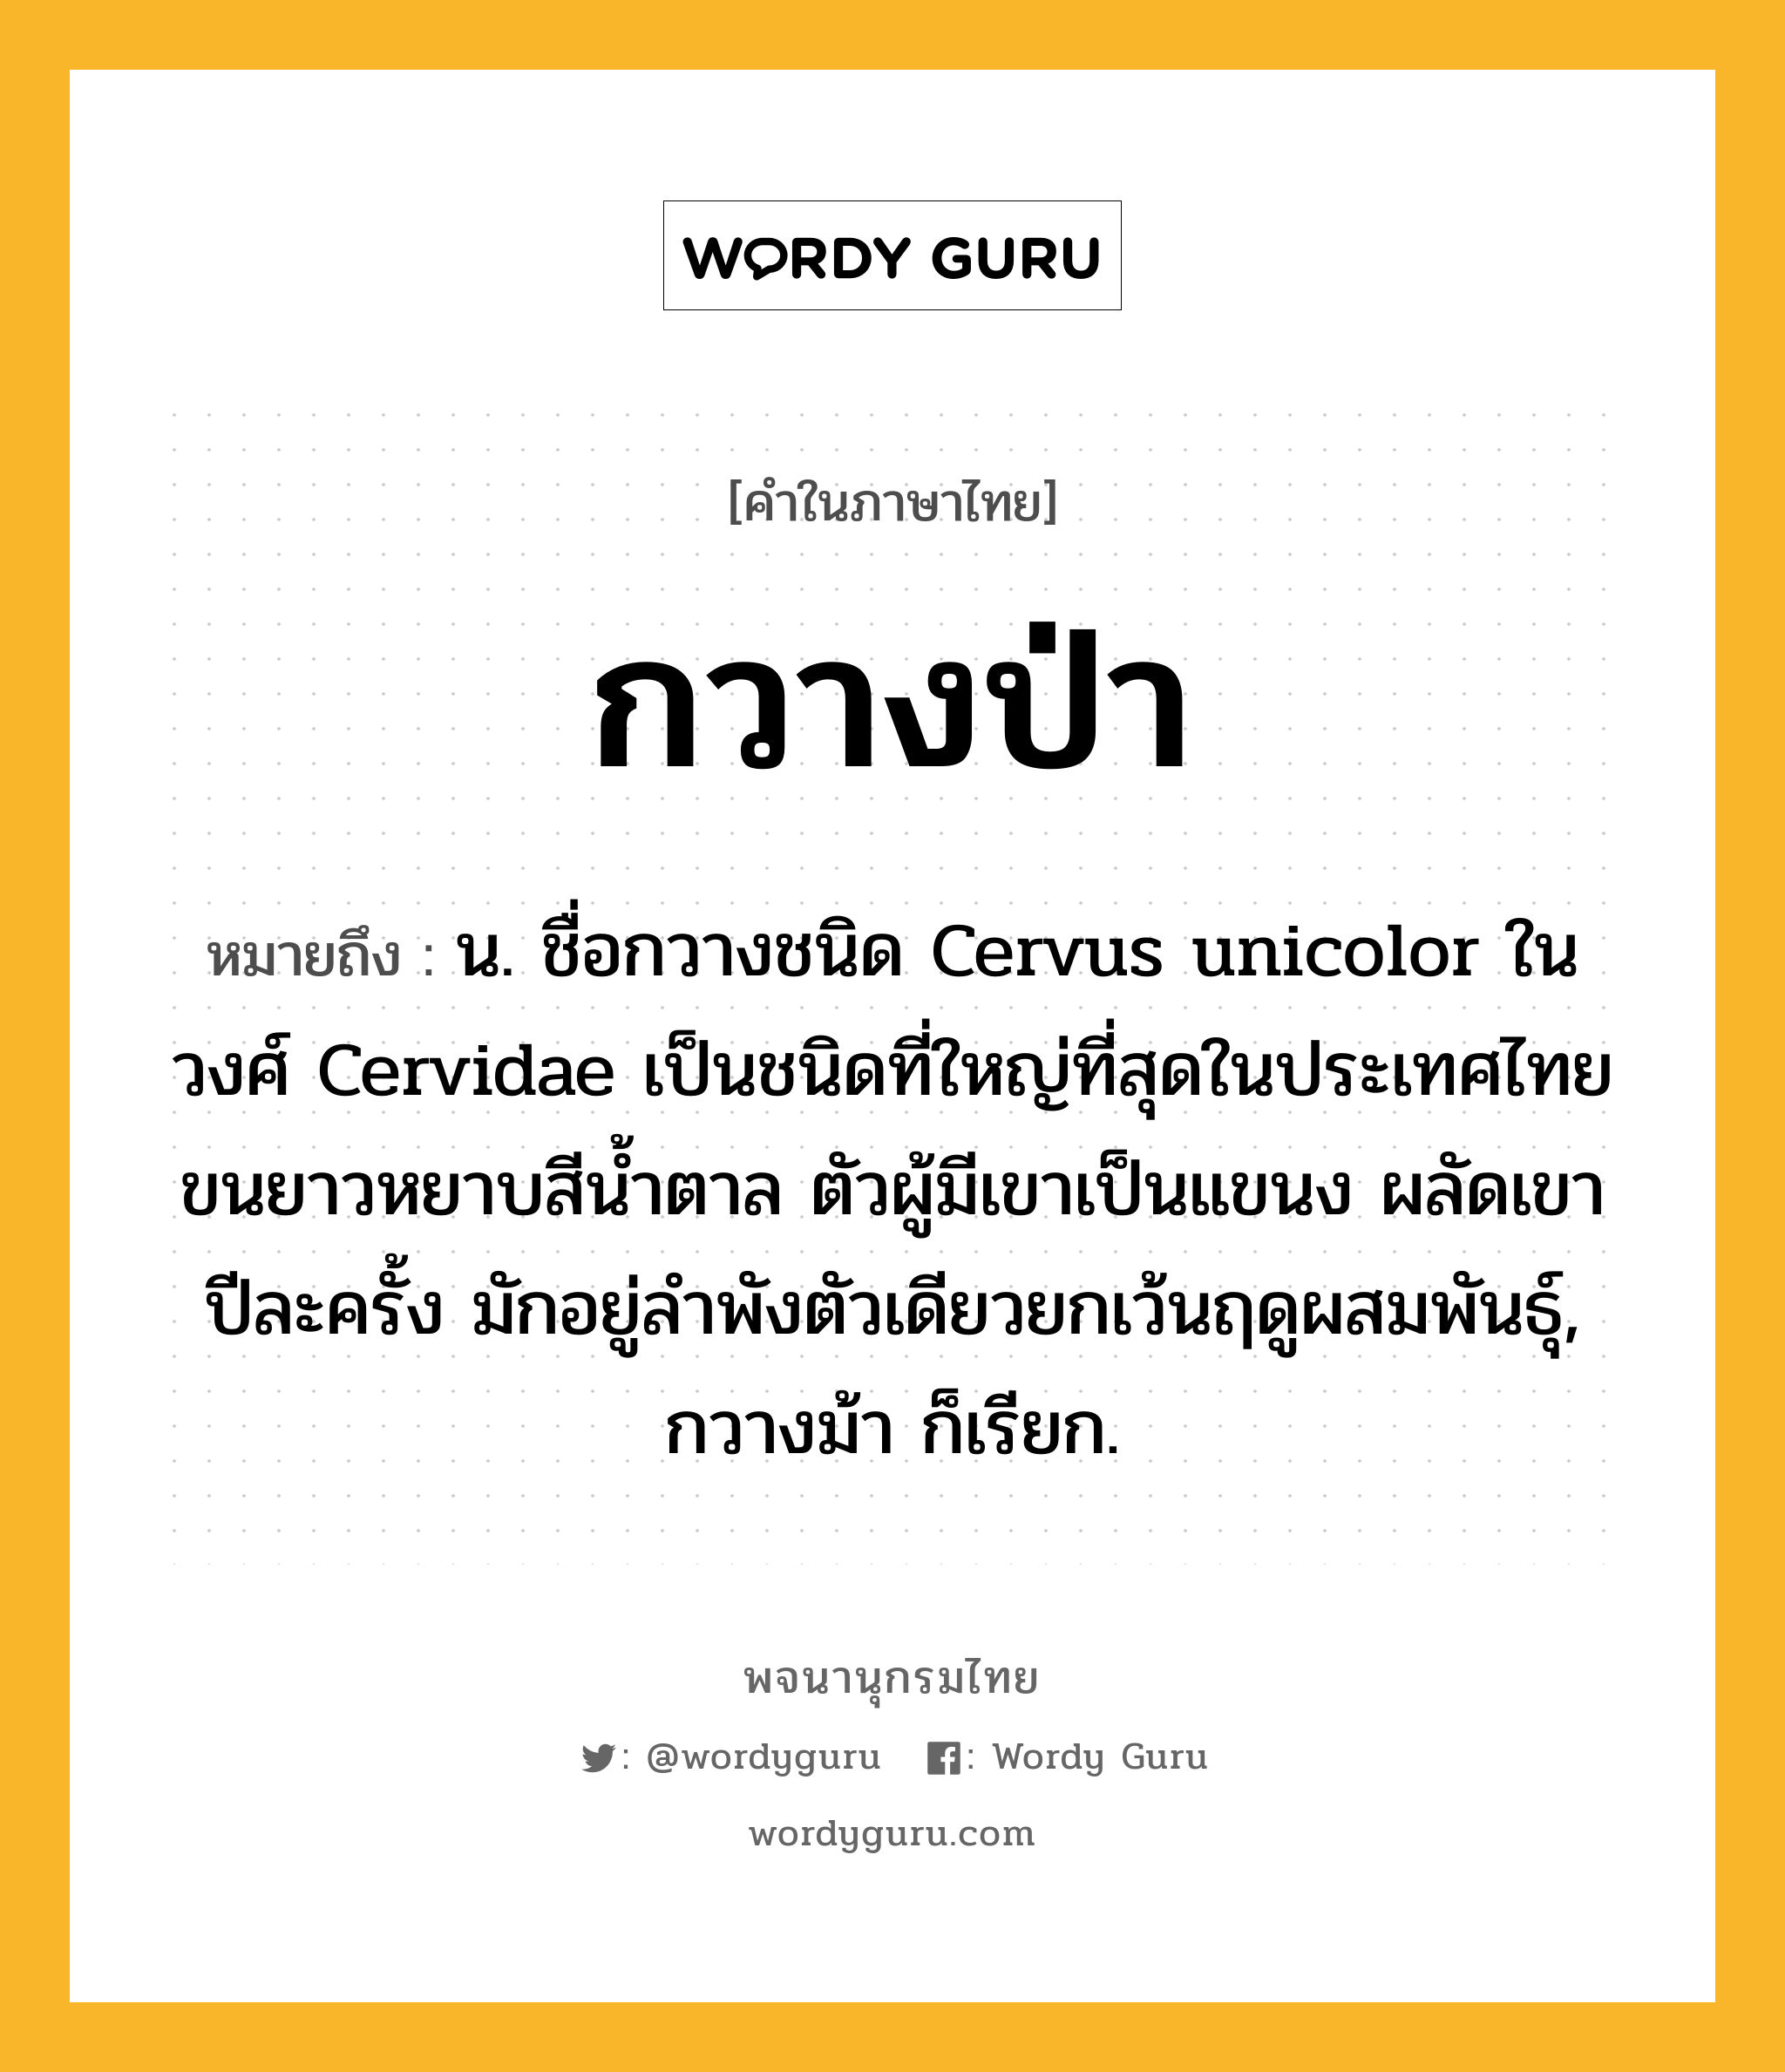 กวางป่า หมายถึงอะไร?, คำในภาษาไทย กวางป่า หมายถึง น. ชื่อกวางชนิด Cervus unicolor ในวงศ์ Cervidae เป็นชนิดที่ใหญ่ที่สุดในประเทศไทย ขนยาวหยาบสีน้ำตาล ตัวผู้มีเขาเป็นแขนง ผลัดเขาปีละครั้ง มักอยู่ลำพังตัวเดียวยกเว้นฤดูผสมพันธุ์, กวางม้า ก็เรียก.